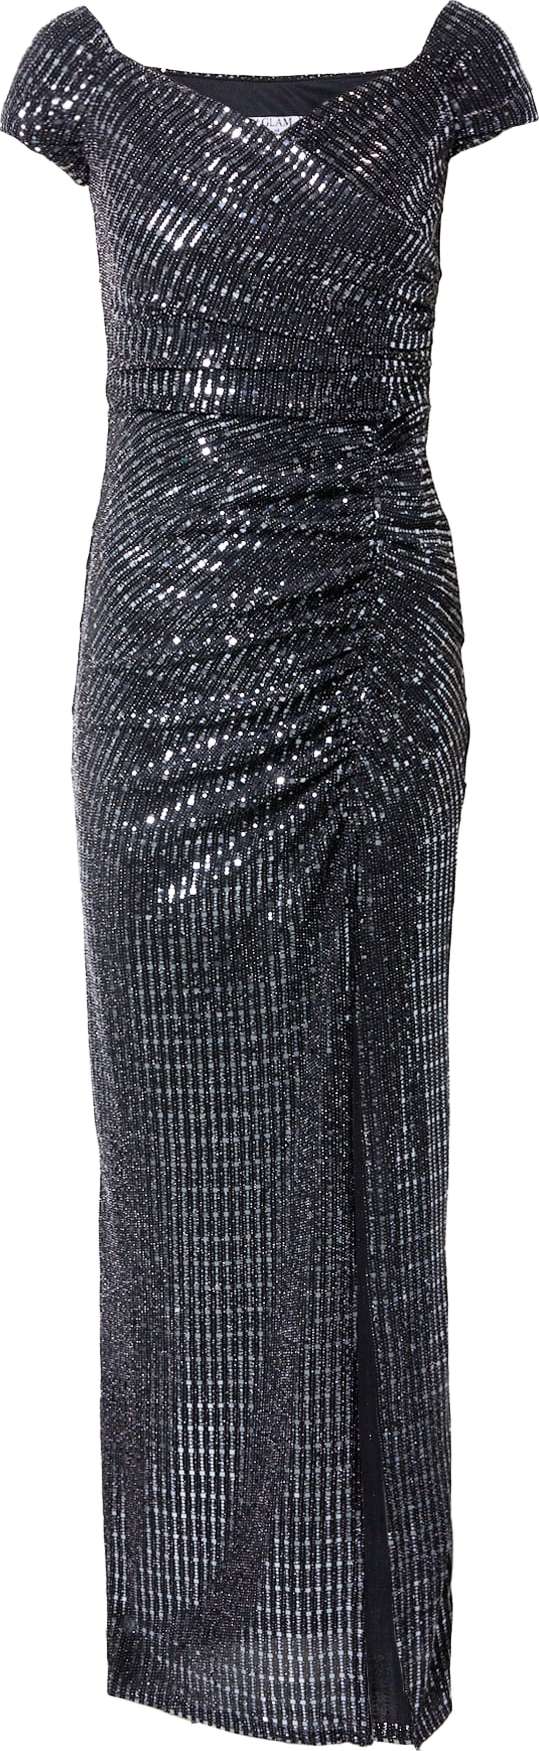 Sistaglam Společenské šaty 'SYDNEY' černá / stříbrná